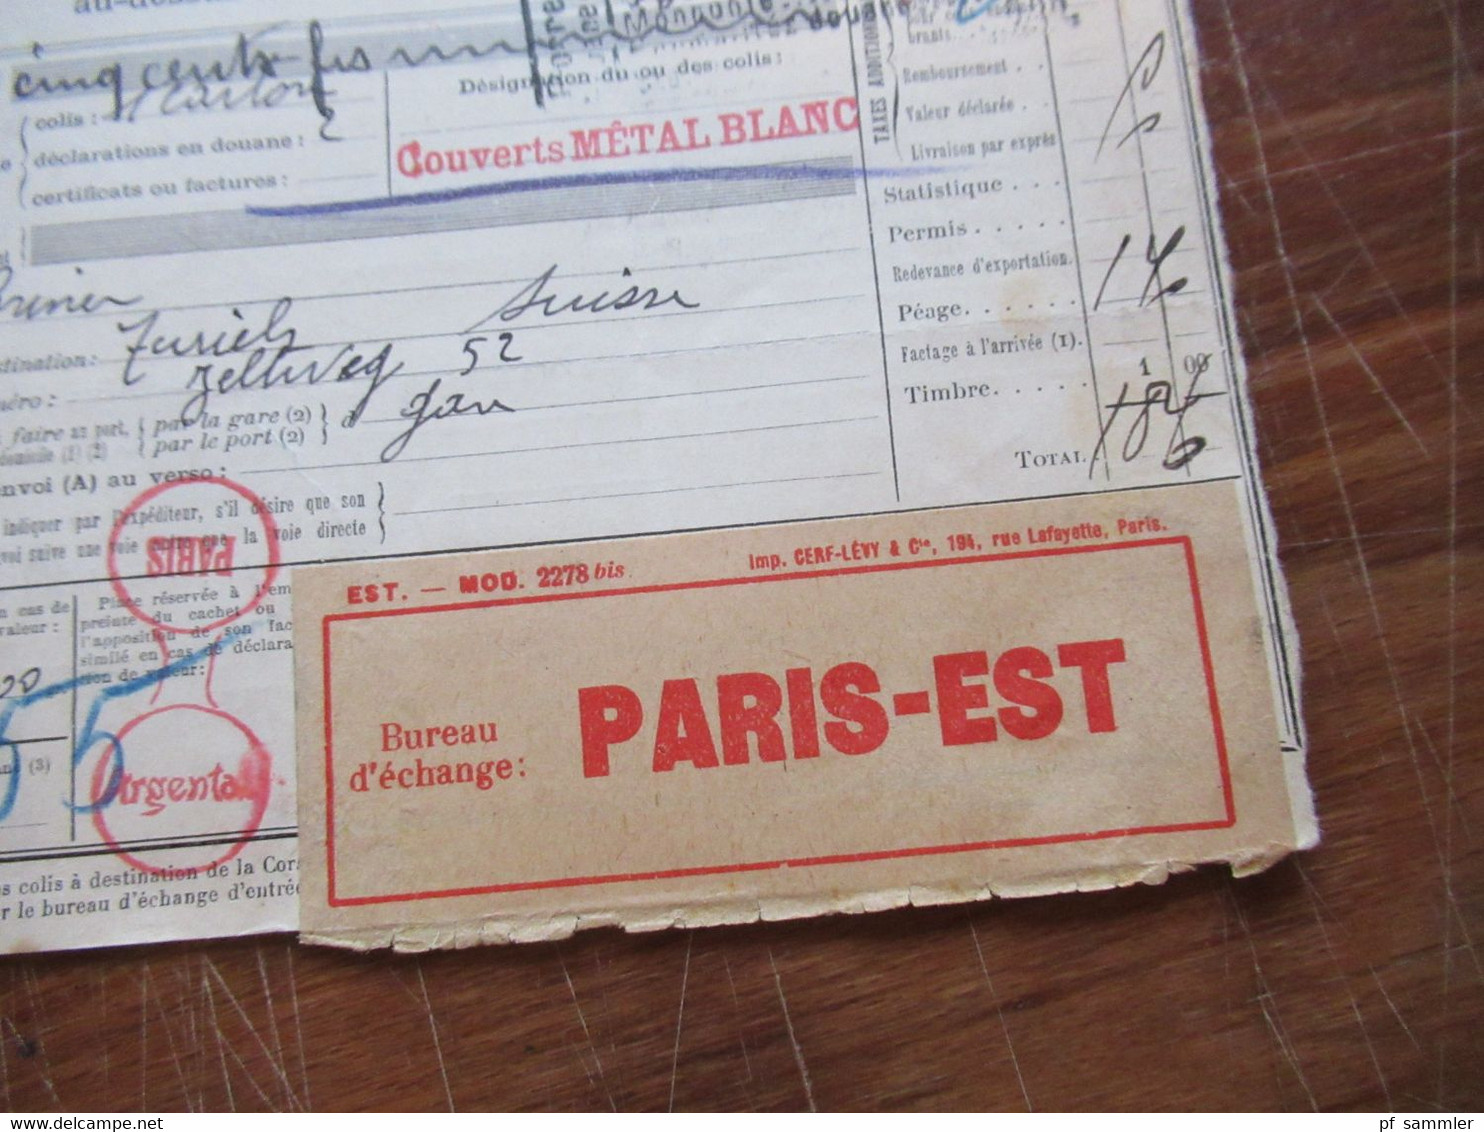 Frankreich 1927 Auslandspaketkarte Colis Postaux In Die Schweiz Valeur Declaree / Paris - Est Mit Vielen Stempeln!! - Cartas & Documentos